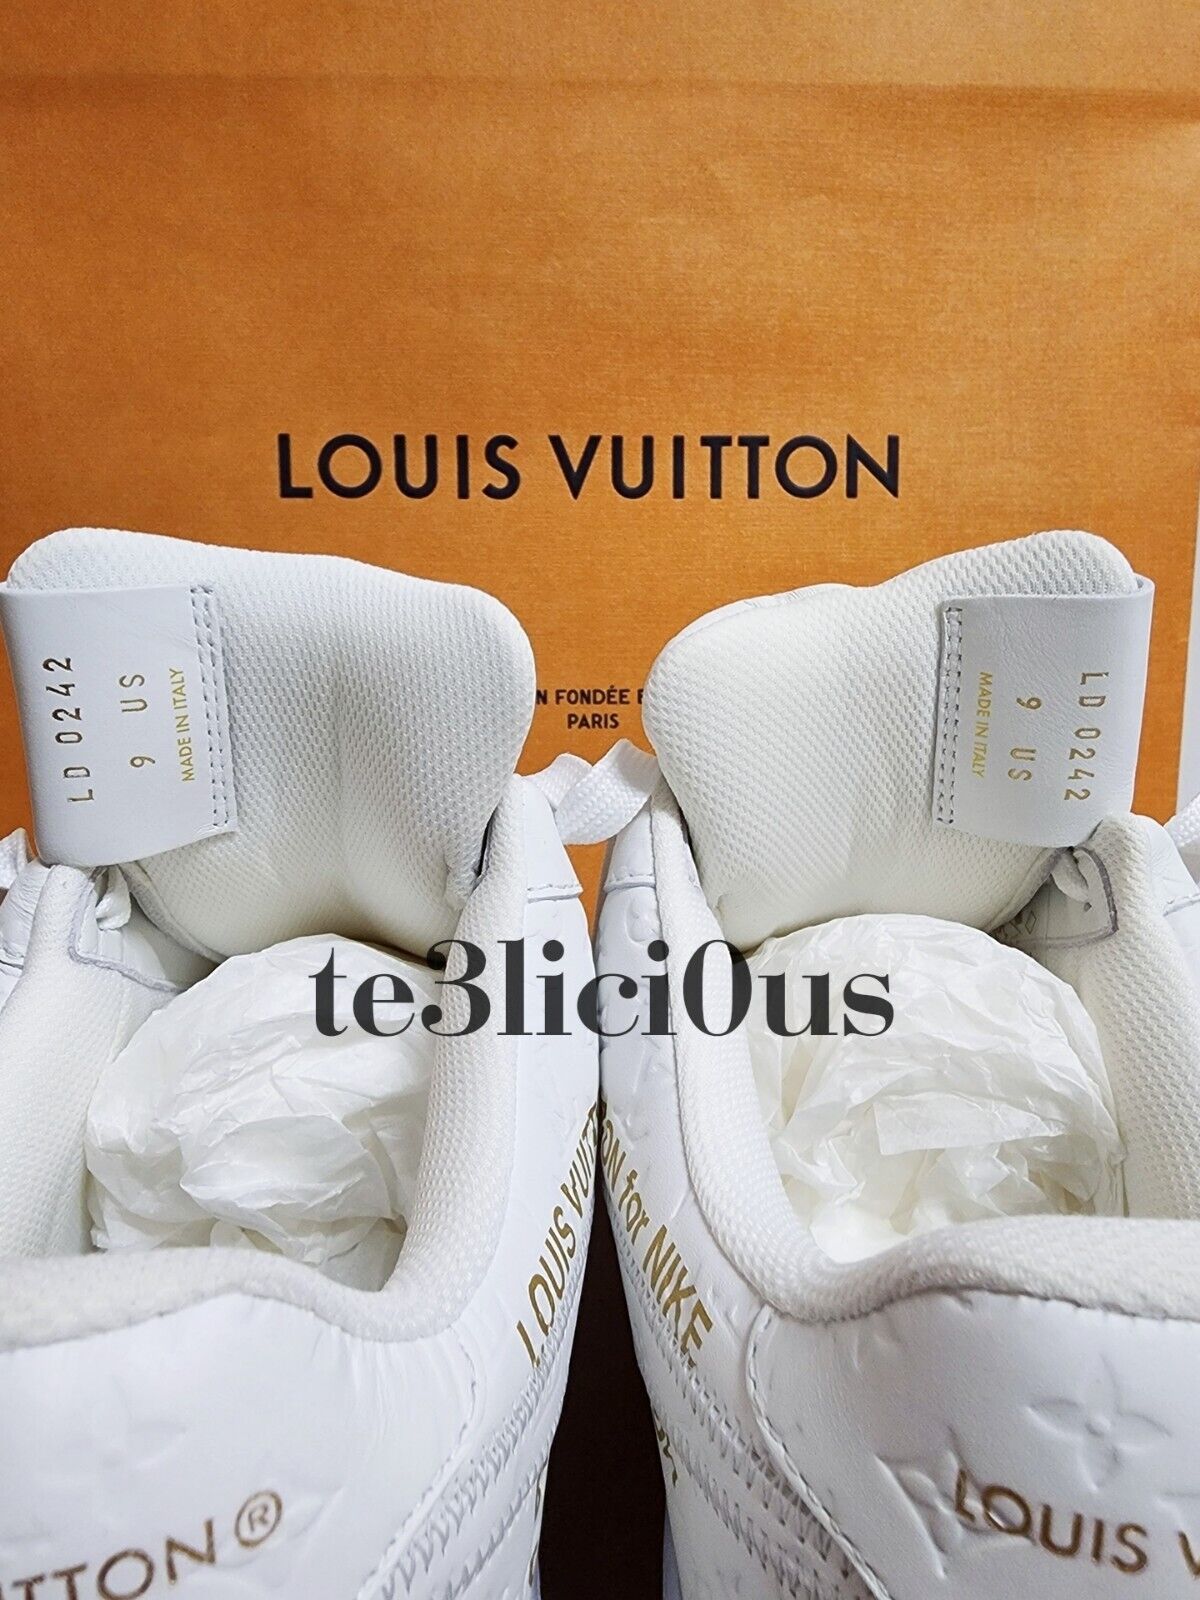 Louis Vuitton Limited Men's US 9 Virgil Abloh Black x White